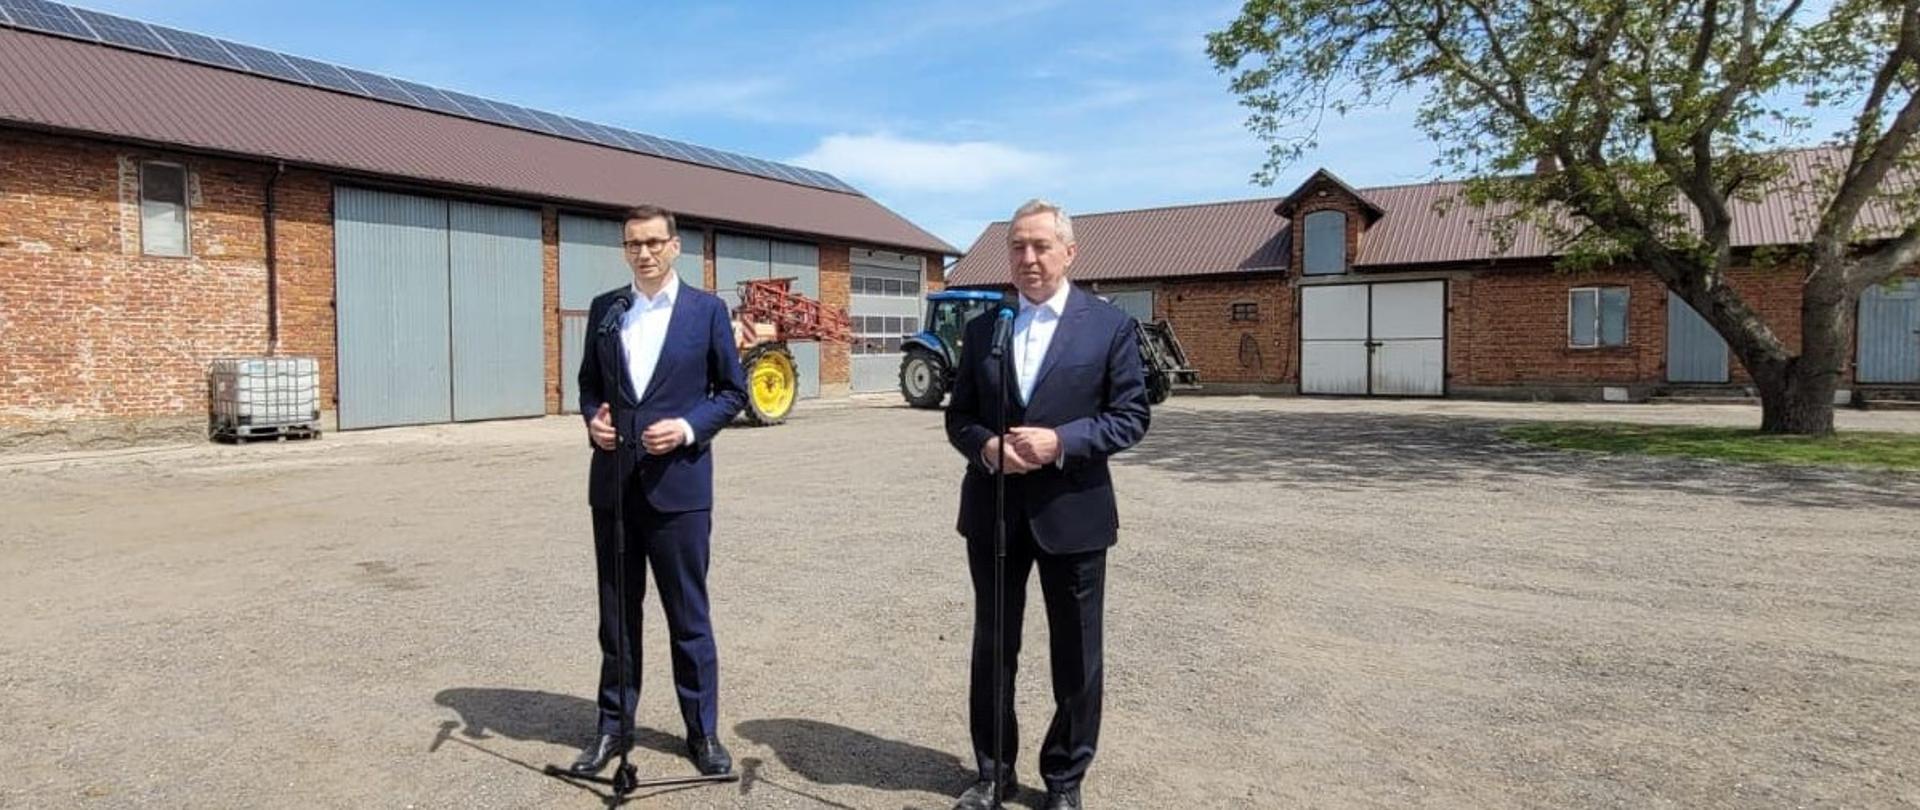 premier Mateusz Morawiecki oraz wicepremier, minister rolnictwa i rozwoju wsi Henryk Kowalczyk stojący na podwórku gospodarstwa rolnego